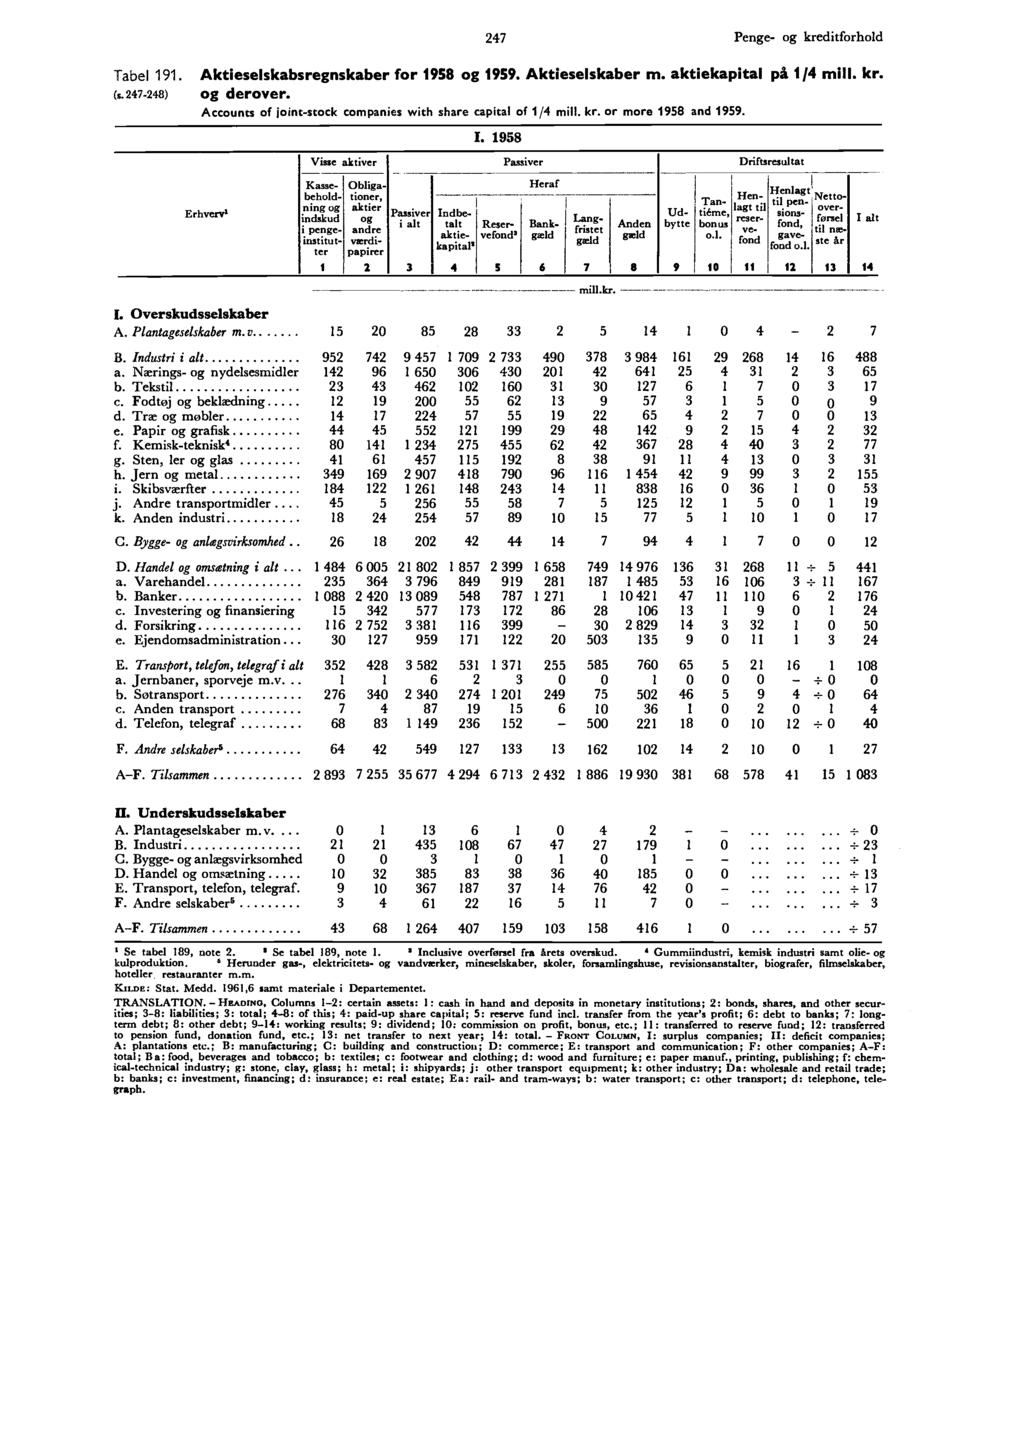 I 247 Penge- og kreditforhold Tabel 9. (s. 247-248) Aktieselskabsregnskaber for 958 og 959. Aktieselskaber m. aktiekapital på /4 og derover.